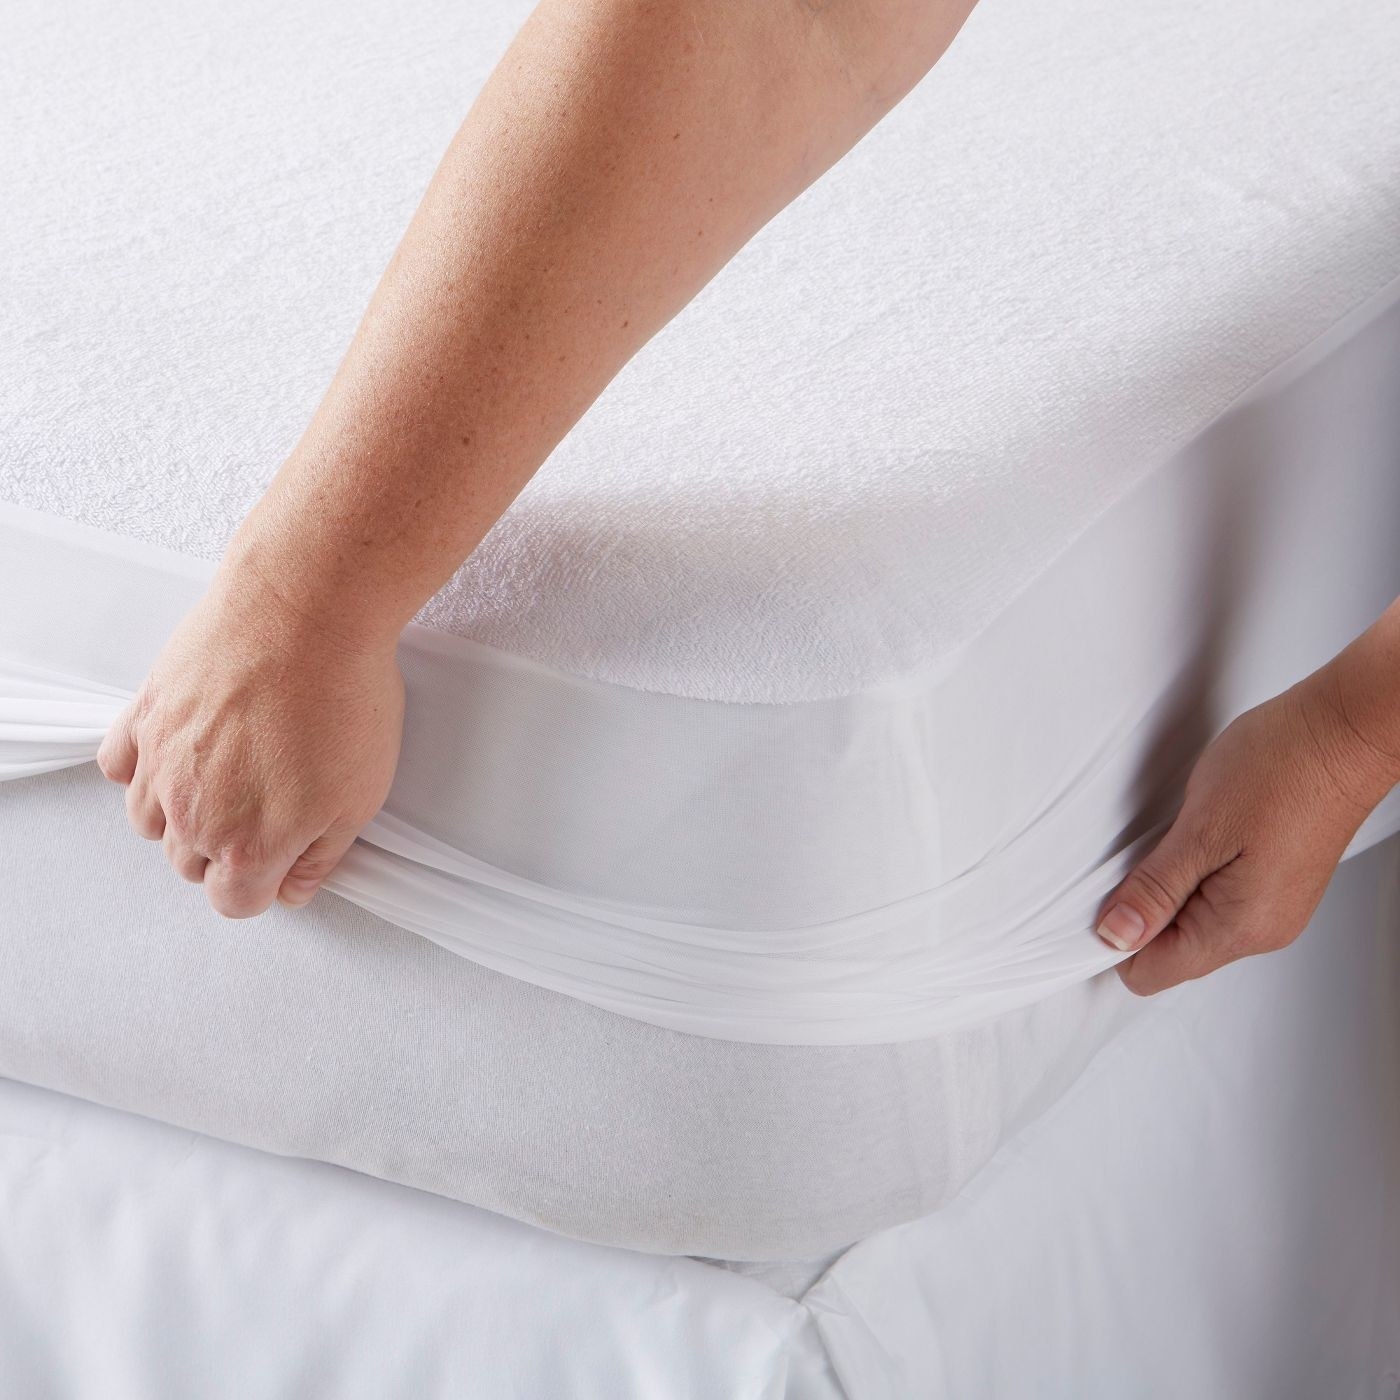 A woman zips a waterproof mattress protector onto a mattress.